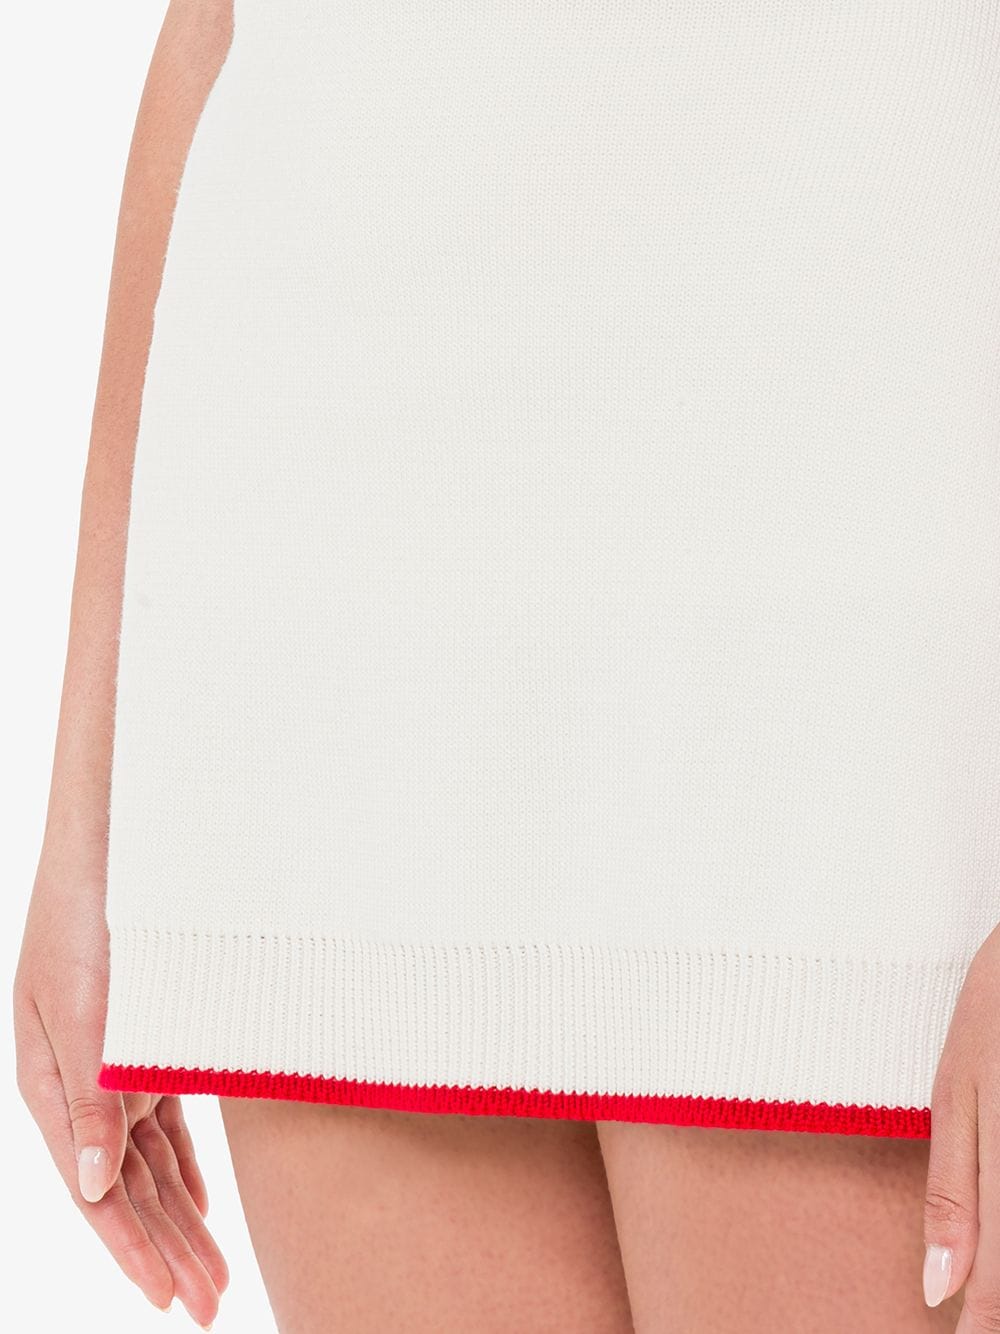 фото Miu miu трикотажная юбка с жаккардовым логотипом